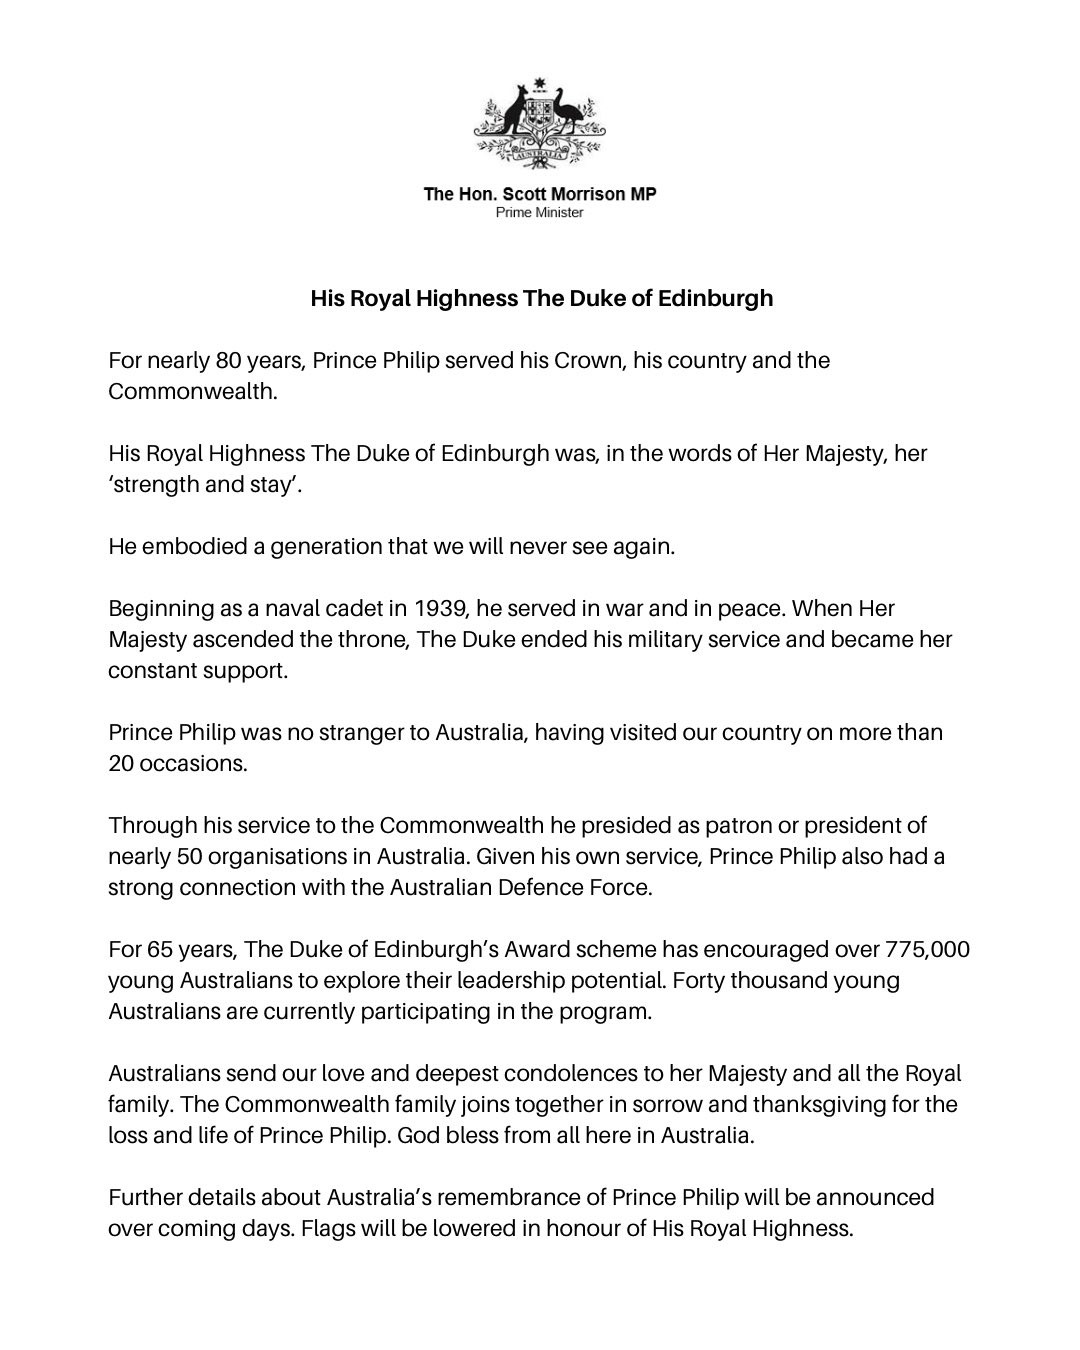 The announcement from Australian Prime Minister Scott Morrison